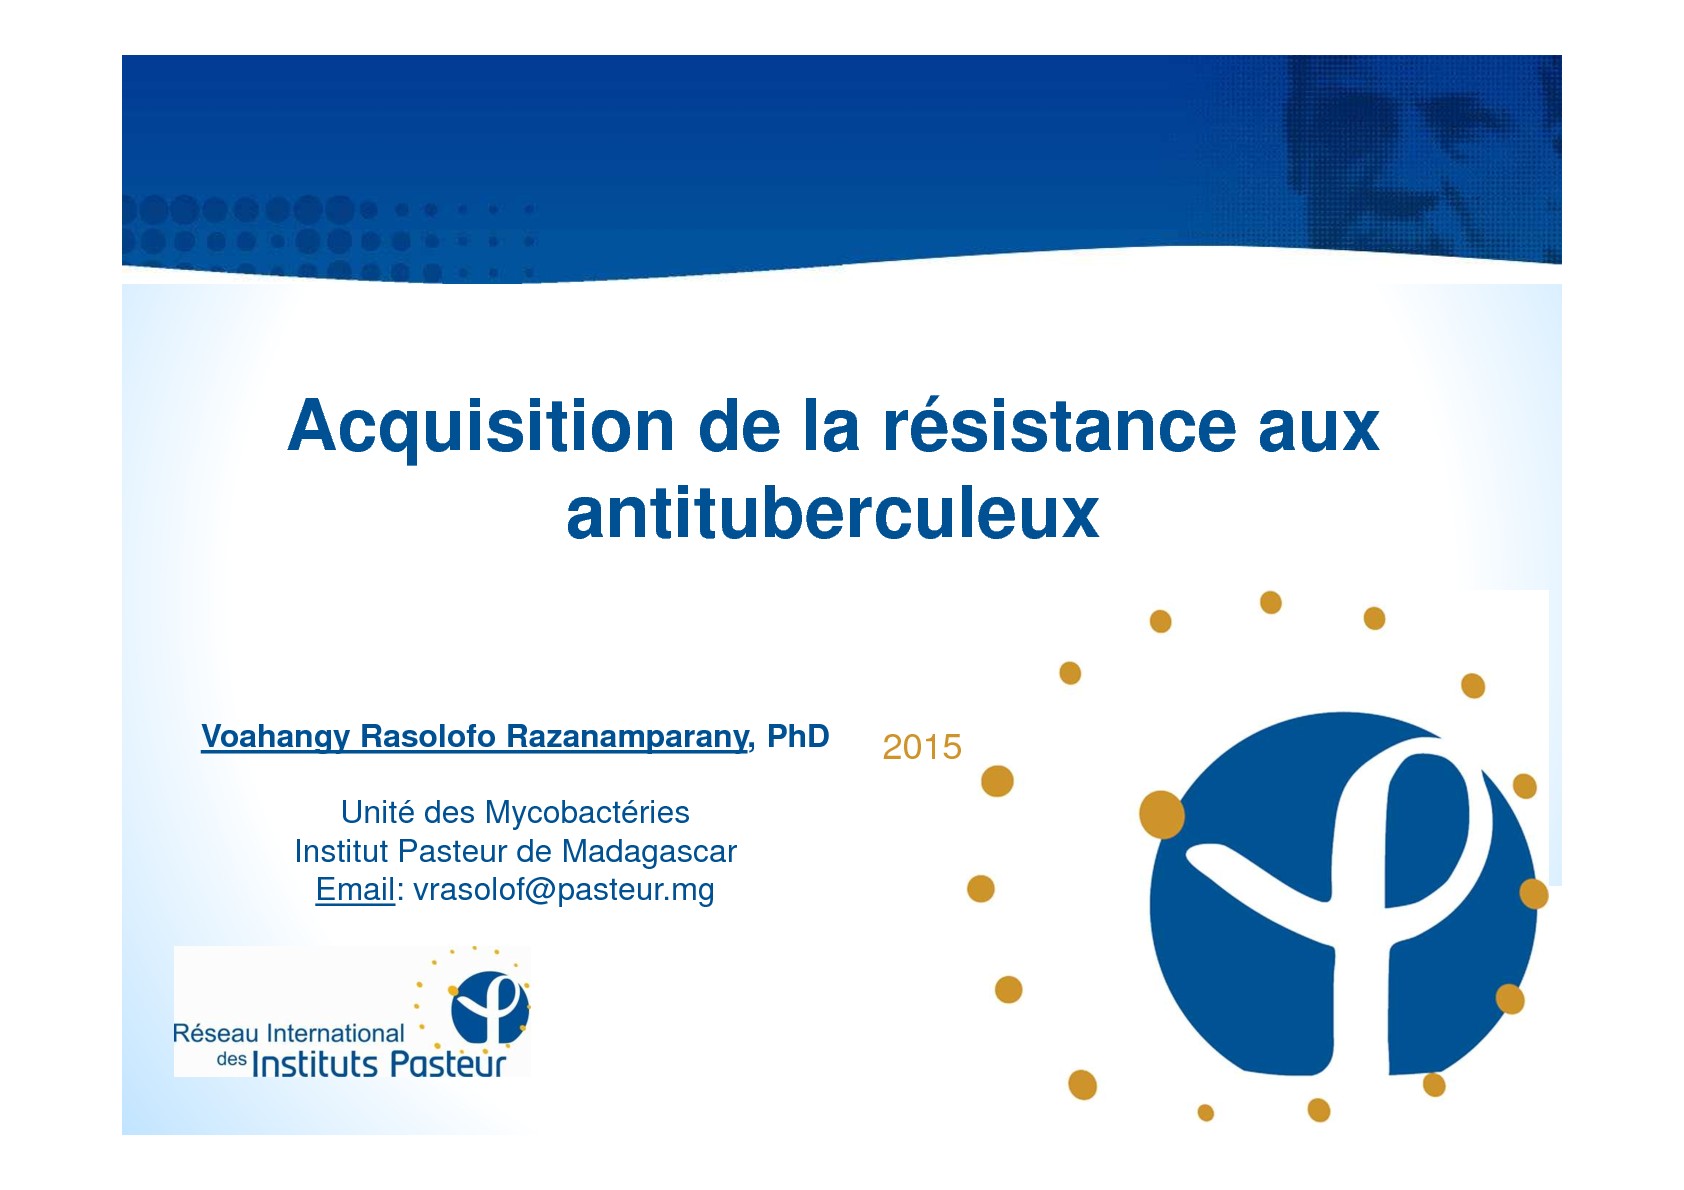 Acquisition de la résistance aux antituberculeux. V Rasolofo